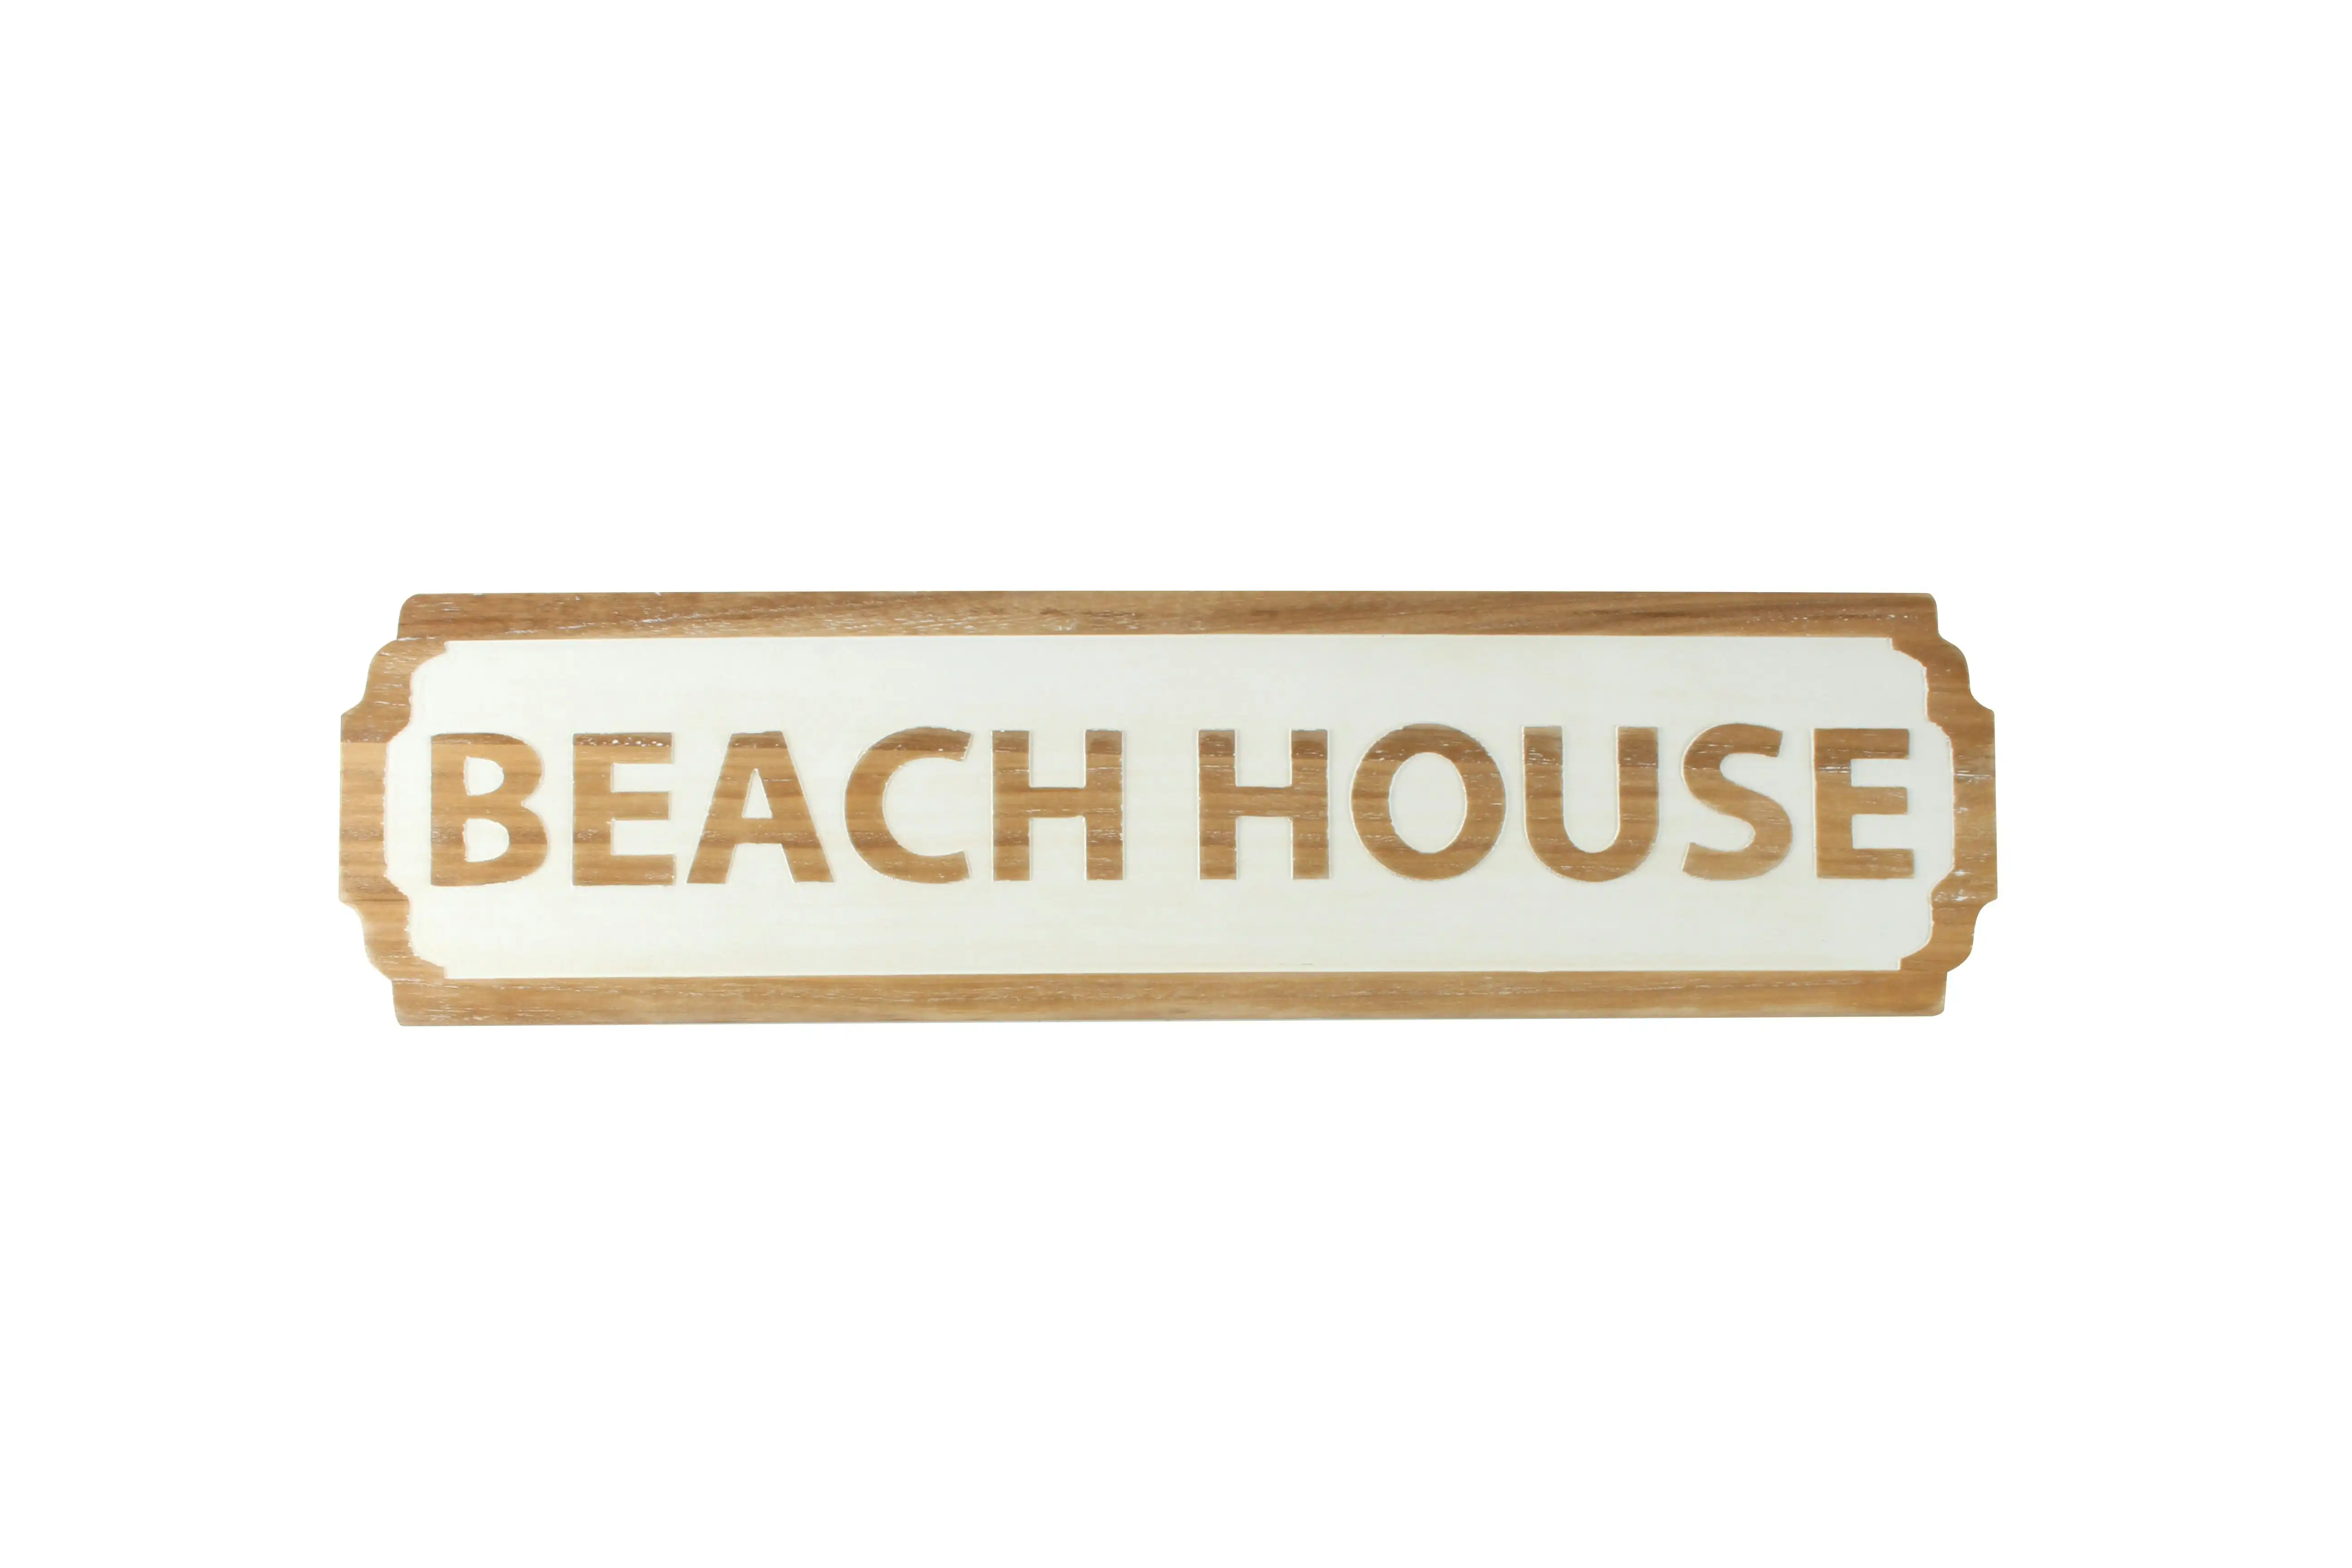 Hemi Wood Beach House Sign 60 x 16cm